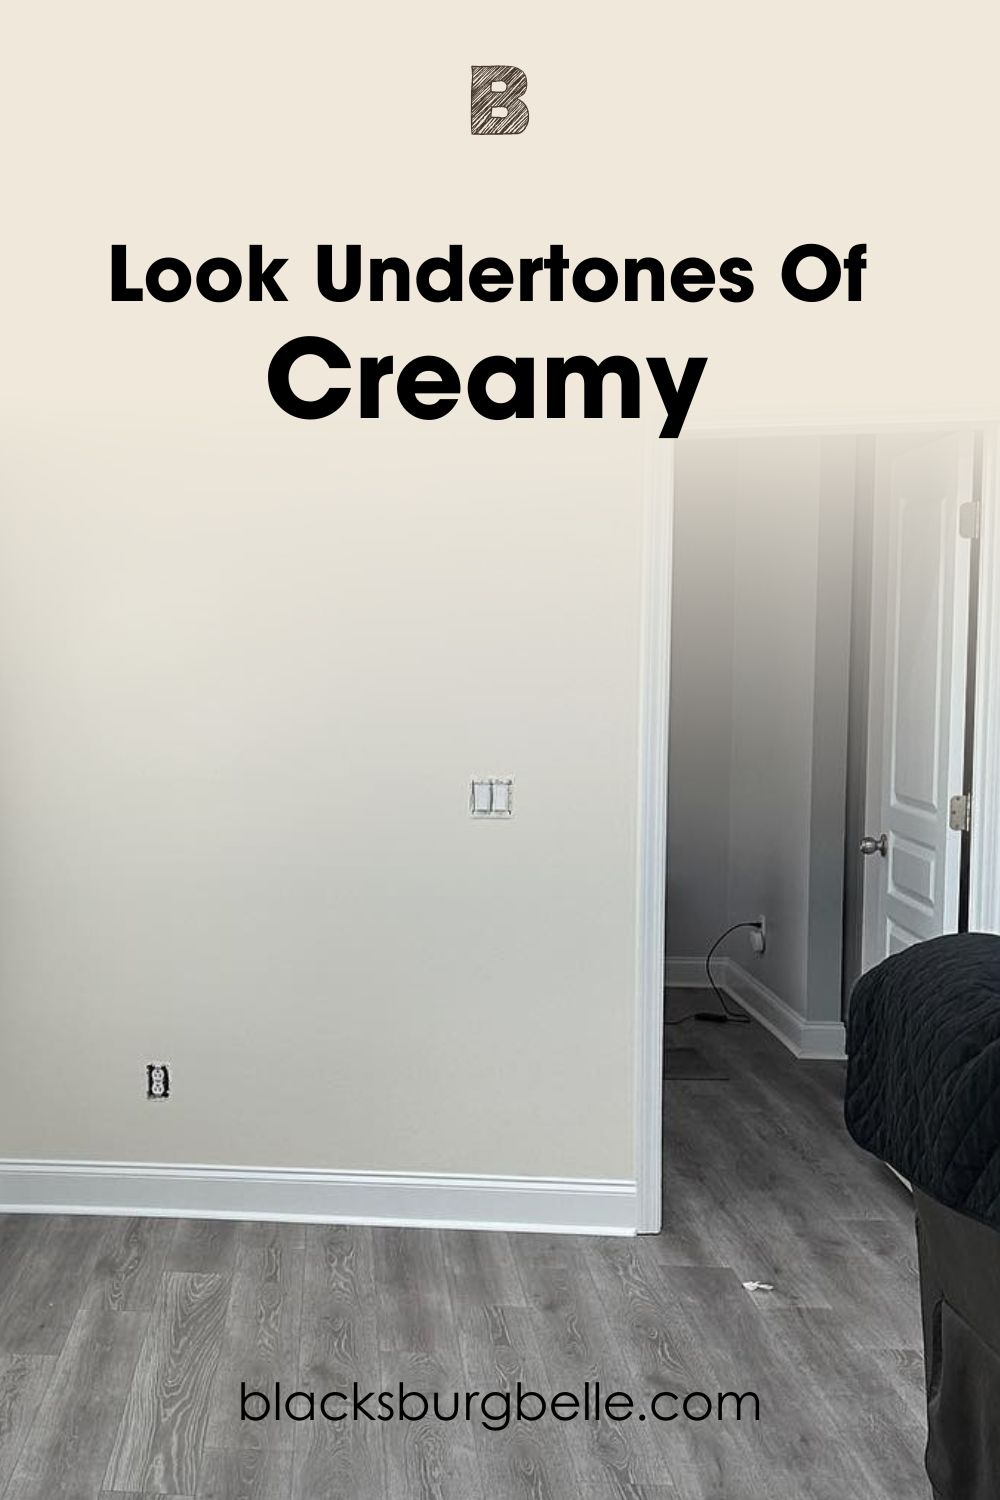 A Closer Look at Creamy’s Undertones